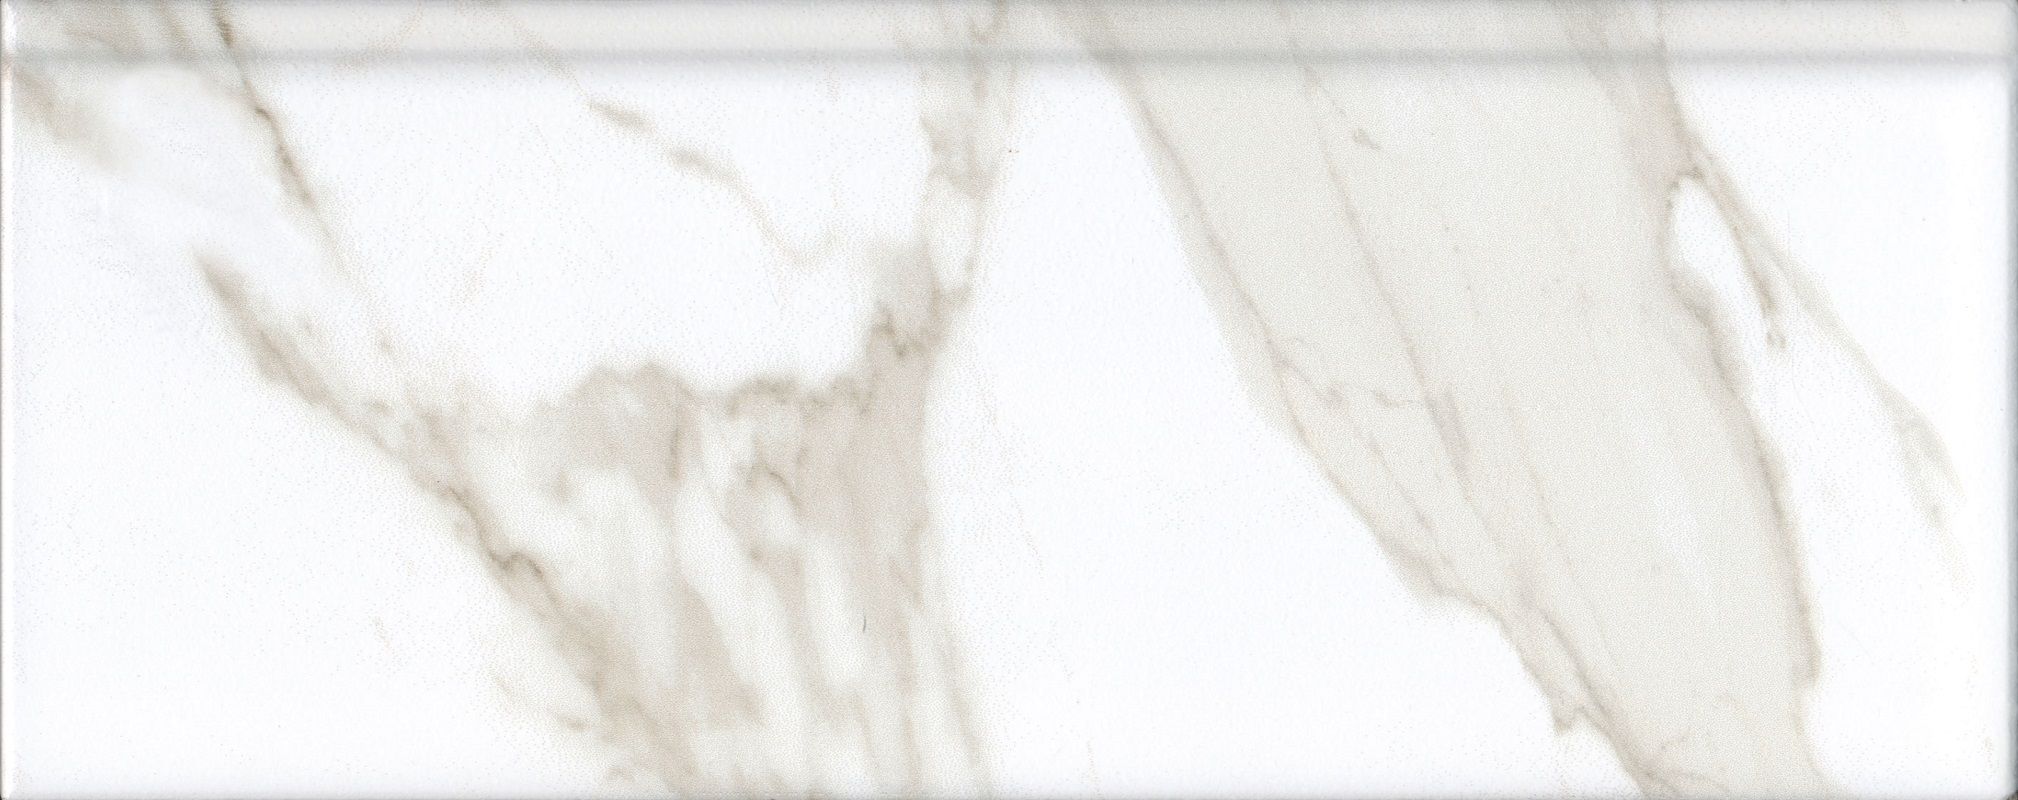 Плинтус керамический Kerama Marazzi Алентежу белый матовый обрезной 30x12 см, в упак 9 штук бордюр kerama marazzi серенада бежевый тёмный глянцевый обрезной 30x12 см 9 штук в упаковке